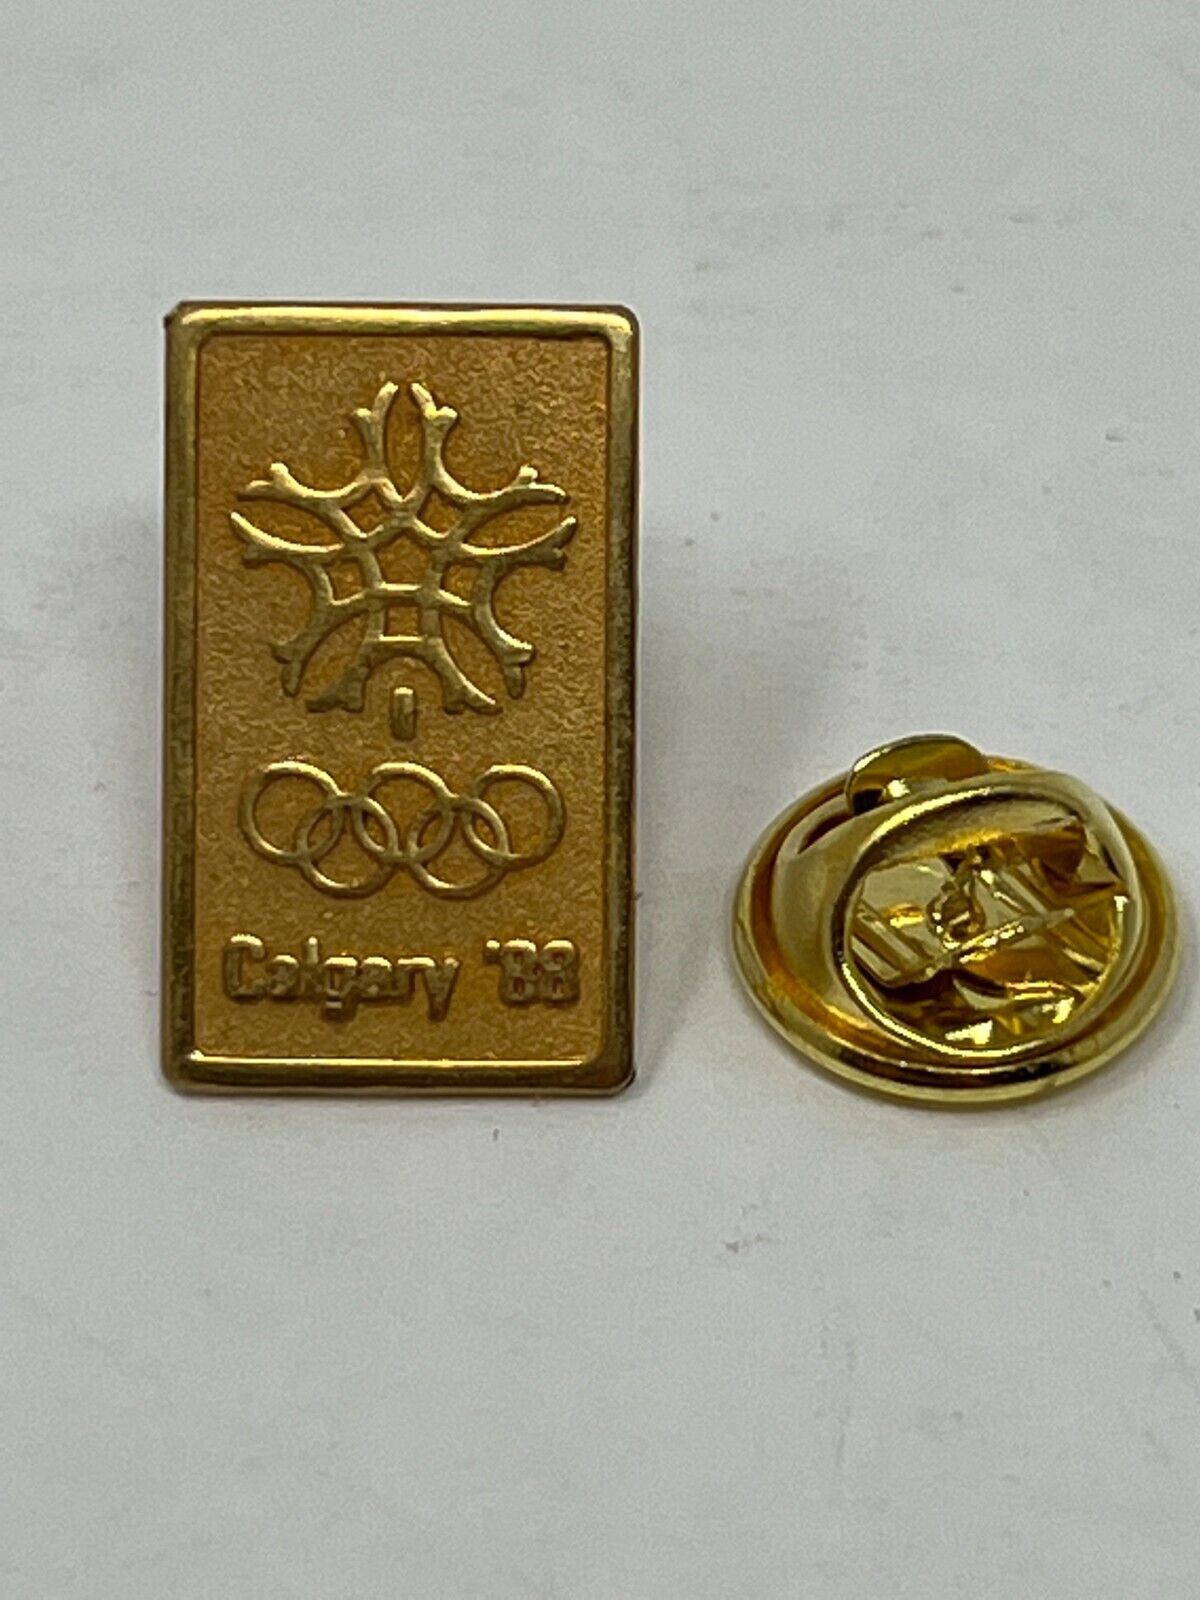 1988 Calgary Winter Games Olympics Lapel Pin